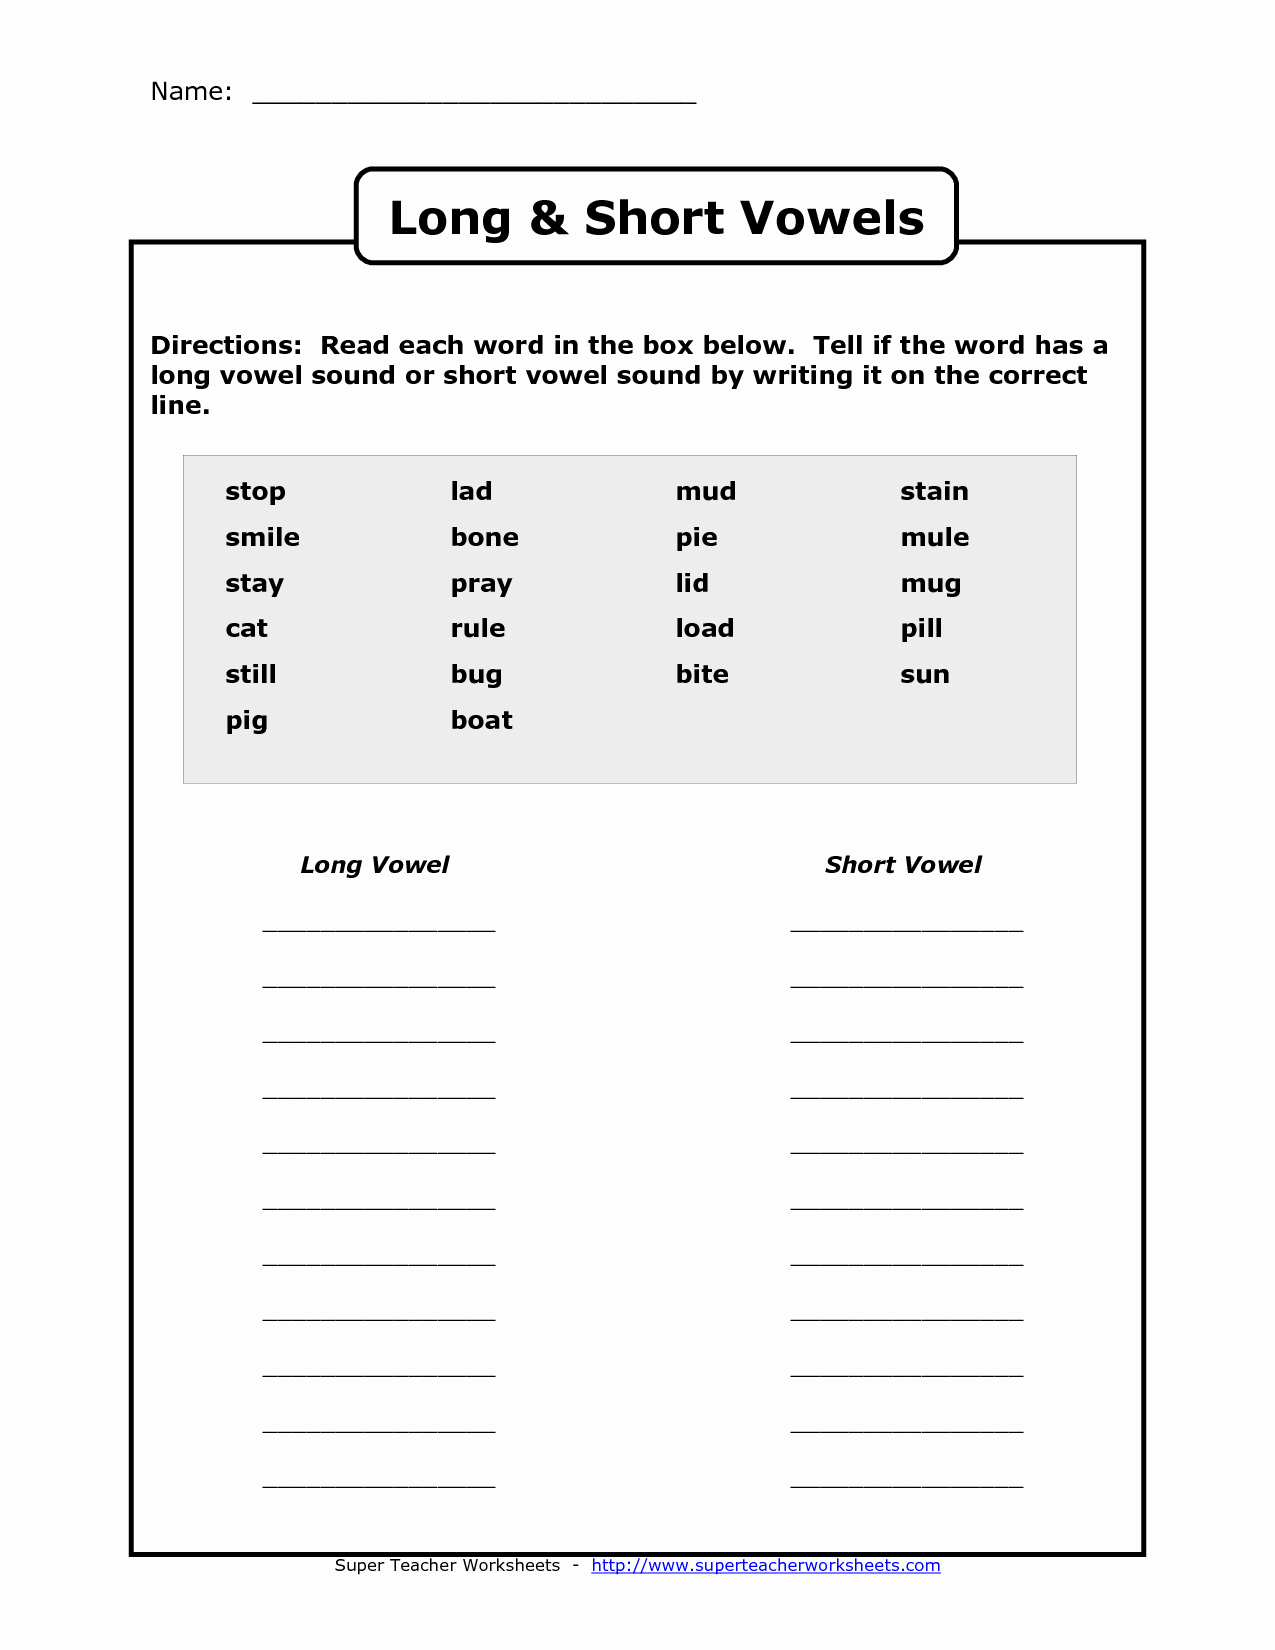 Short and Long Vowel Worksheet Inspirational 15 Best Of Long and Short Vowel Worksheets